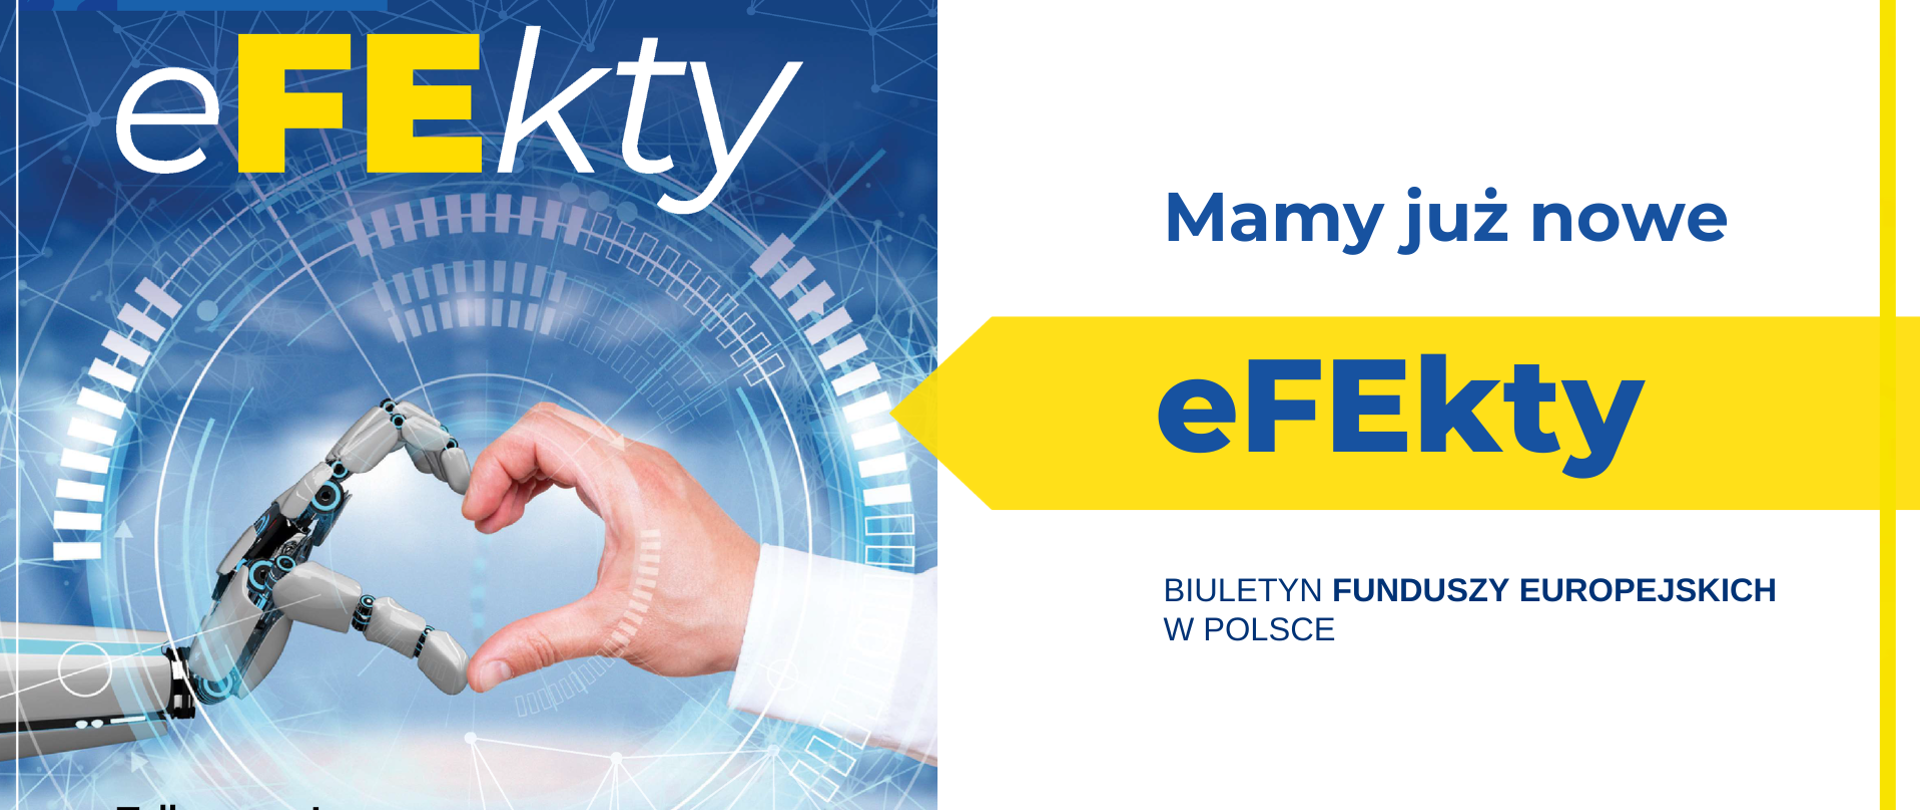 Rysunek stockowy przedstawiający rękę człowieka i robota. Obok napis: "Mamy już nowe EFEkty Biuletyn Funduszy Europejskich w Polsce"